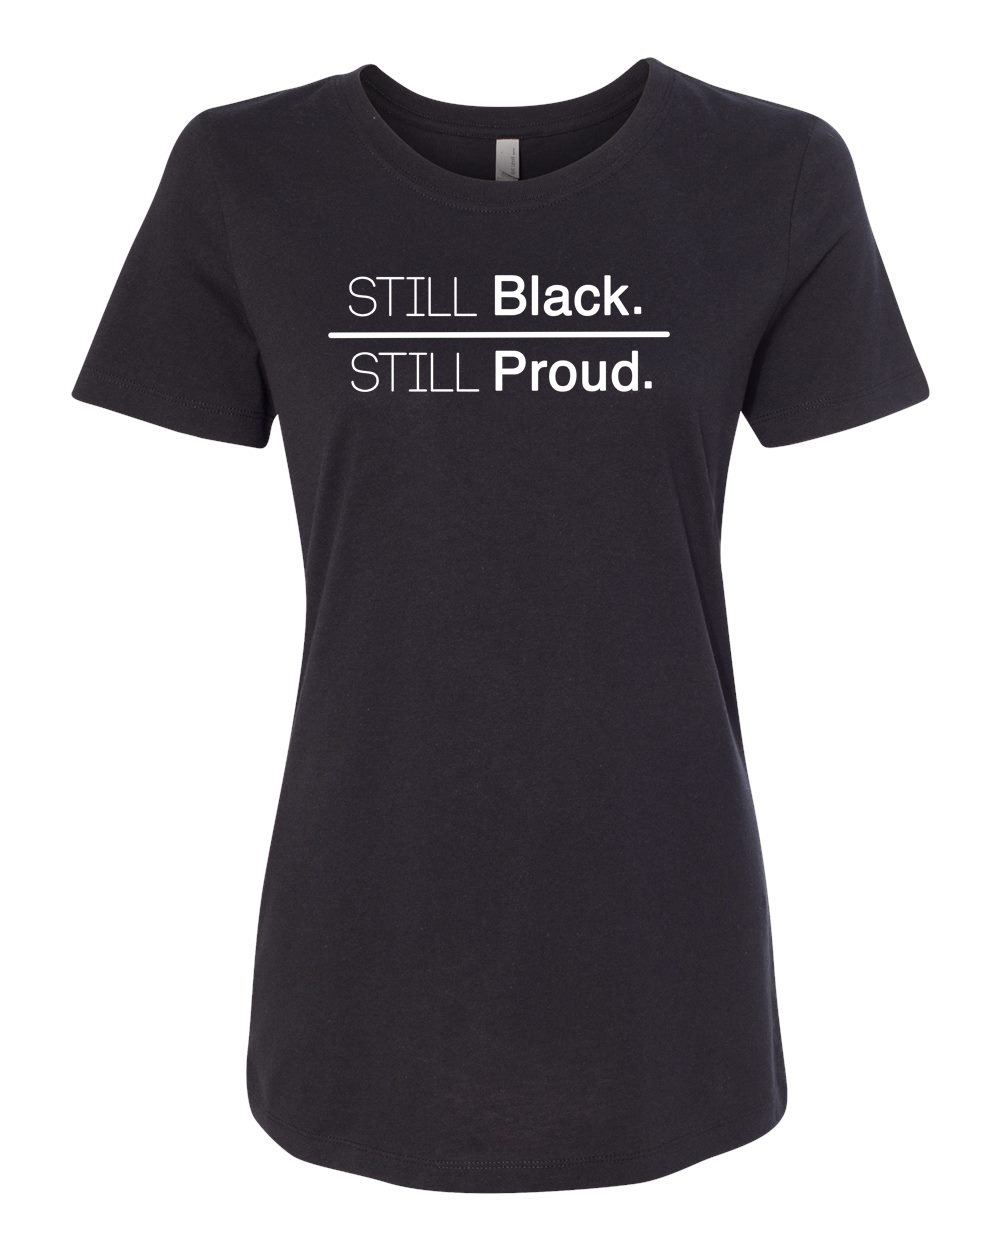 Still Black, Still Proud, Black History Shirt , Civil Rights Movement ...